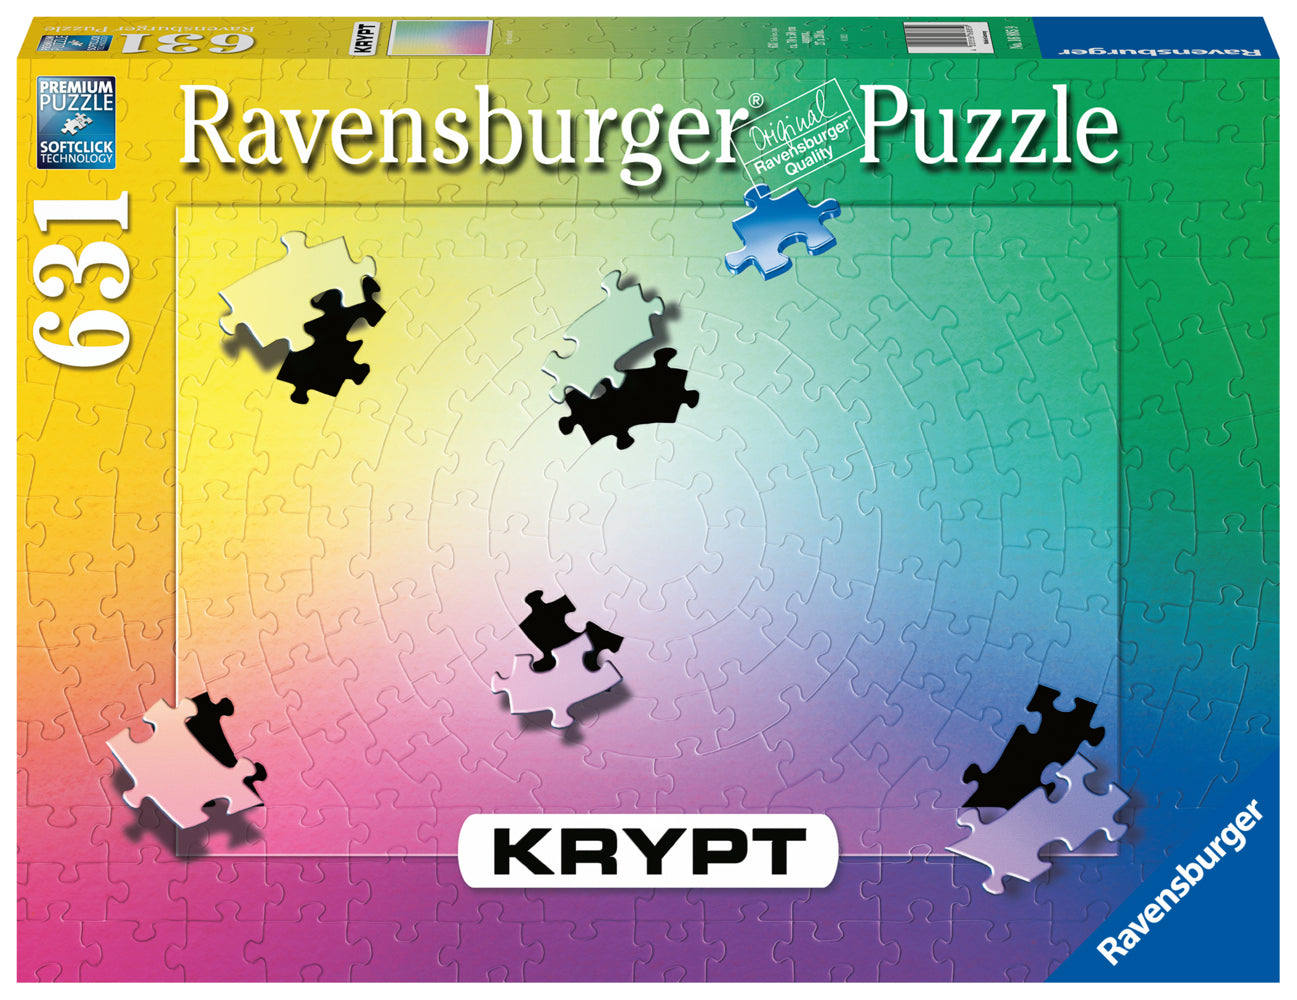 Ravensburger Puzzle 16885 - Krypt Puzzle Gradient - Schweres Puzzle für Erwachsene und Kinder ab 14 Jahren, mit 631 Teilen - Bild 1